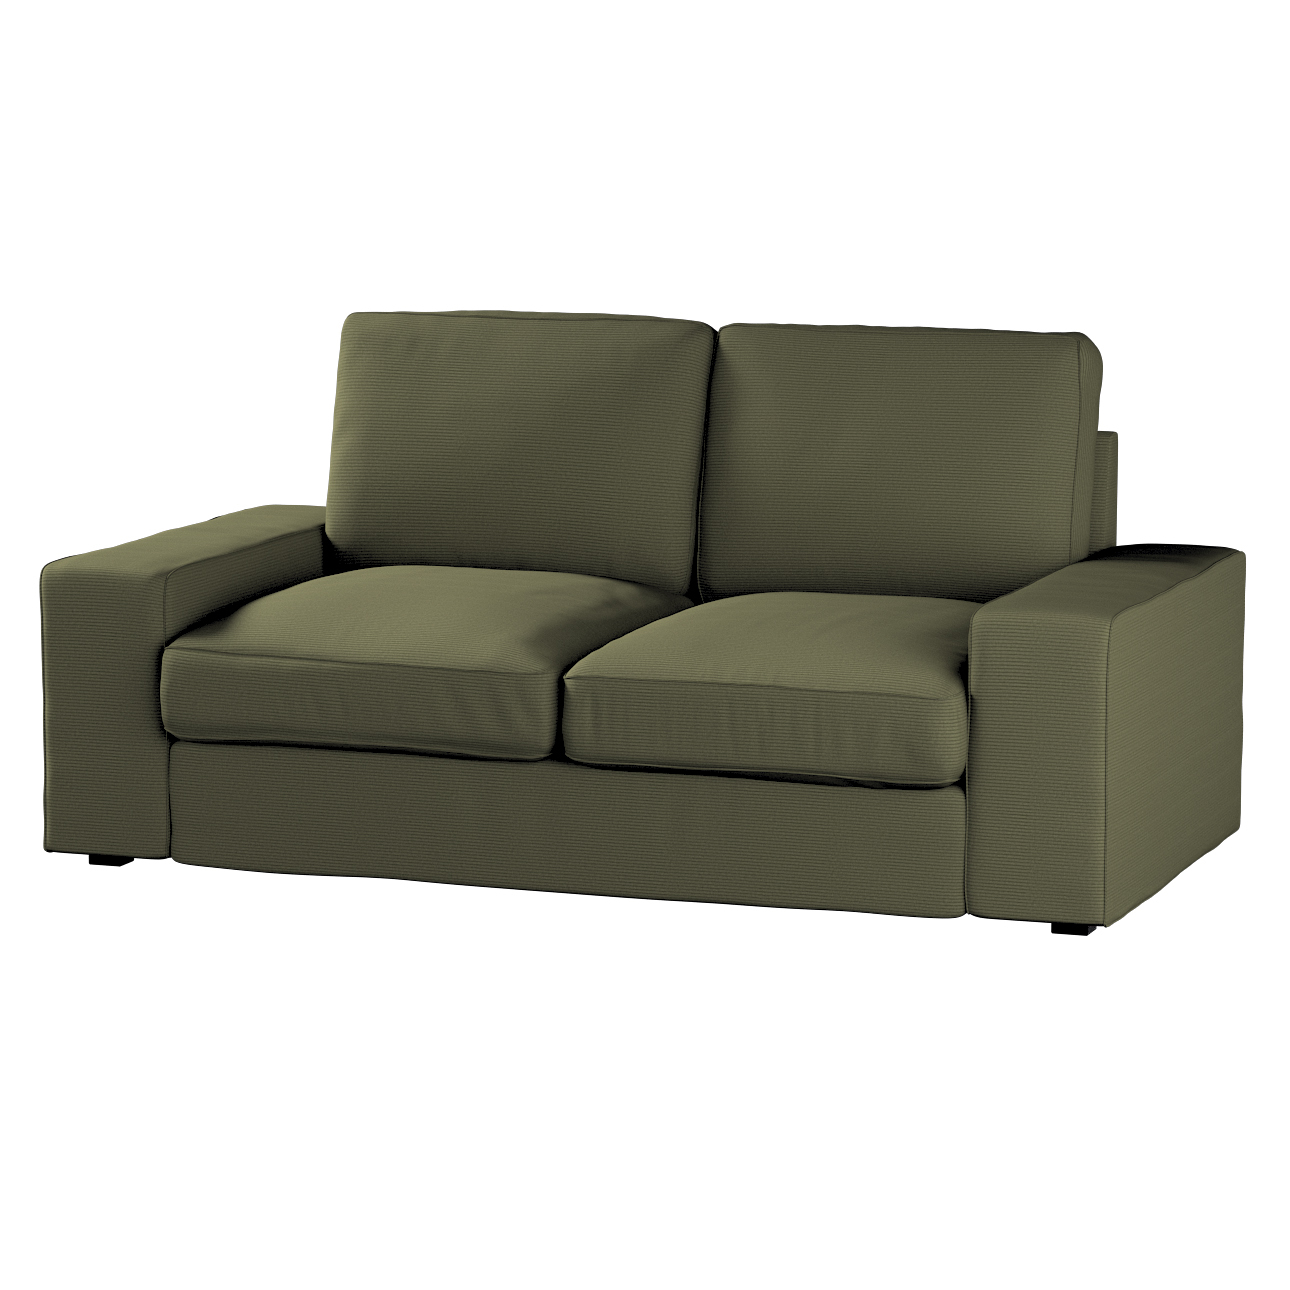 Bezug für Kivik 2-Sitzer Sofa, olivgrün, Bezug für Sofa Kivik 2-Sitzer, Man günstig online kaufen